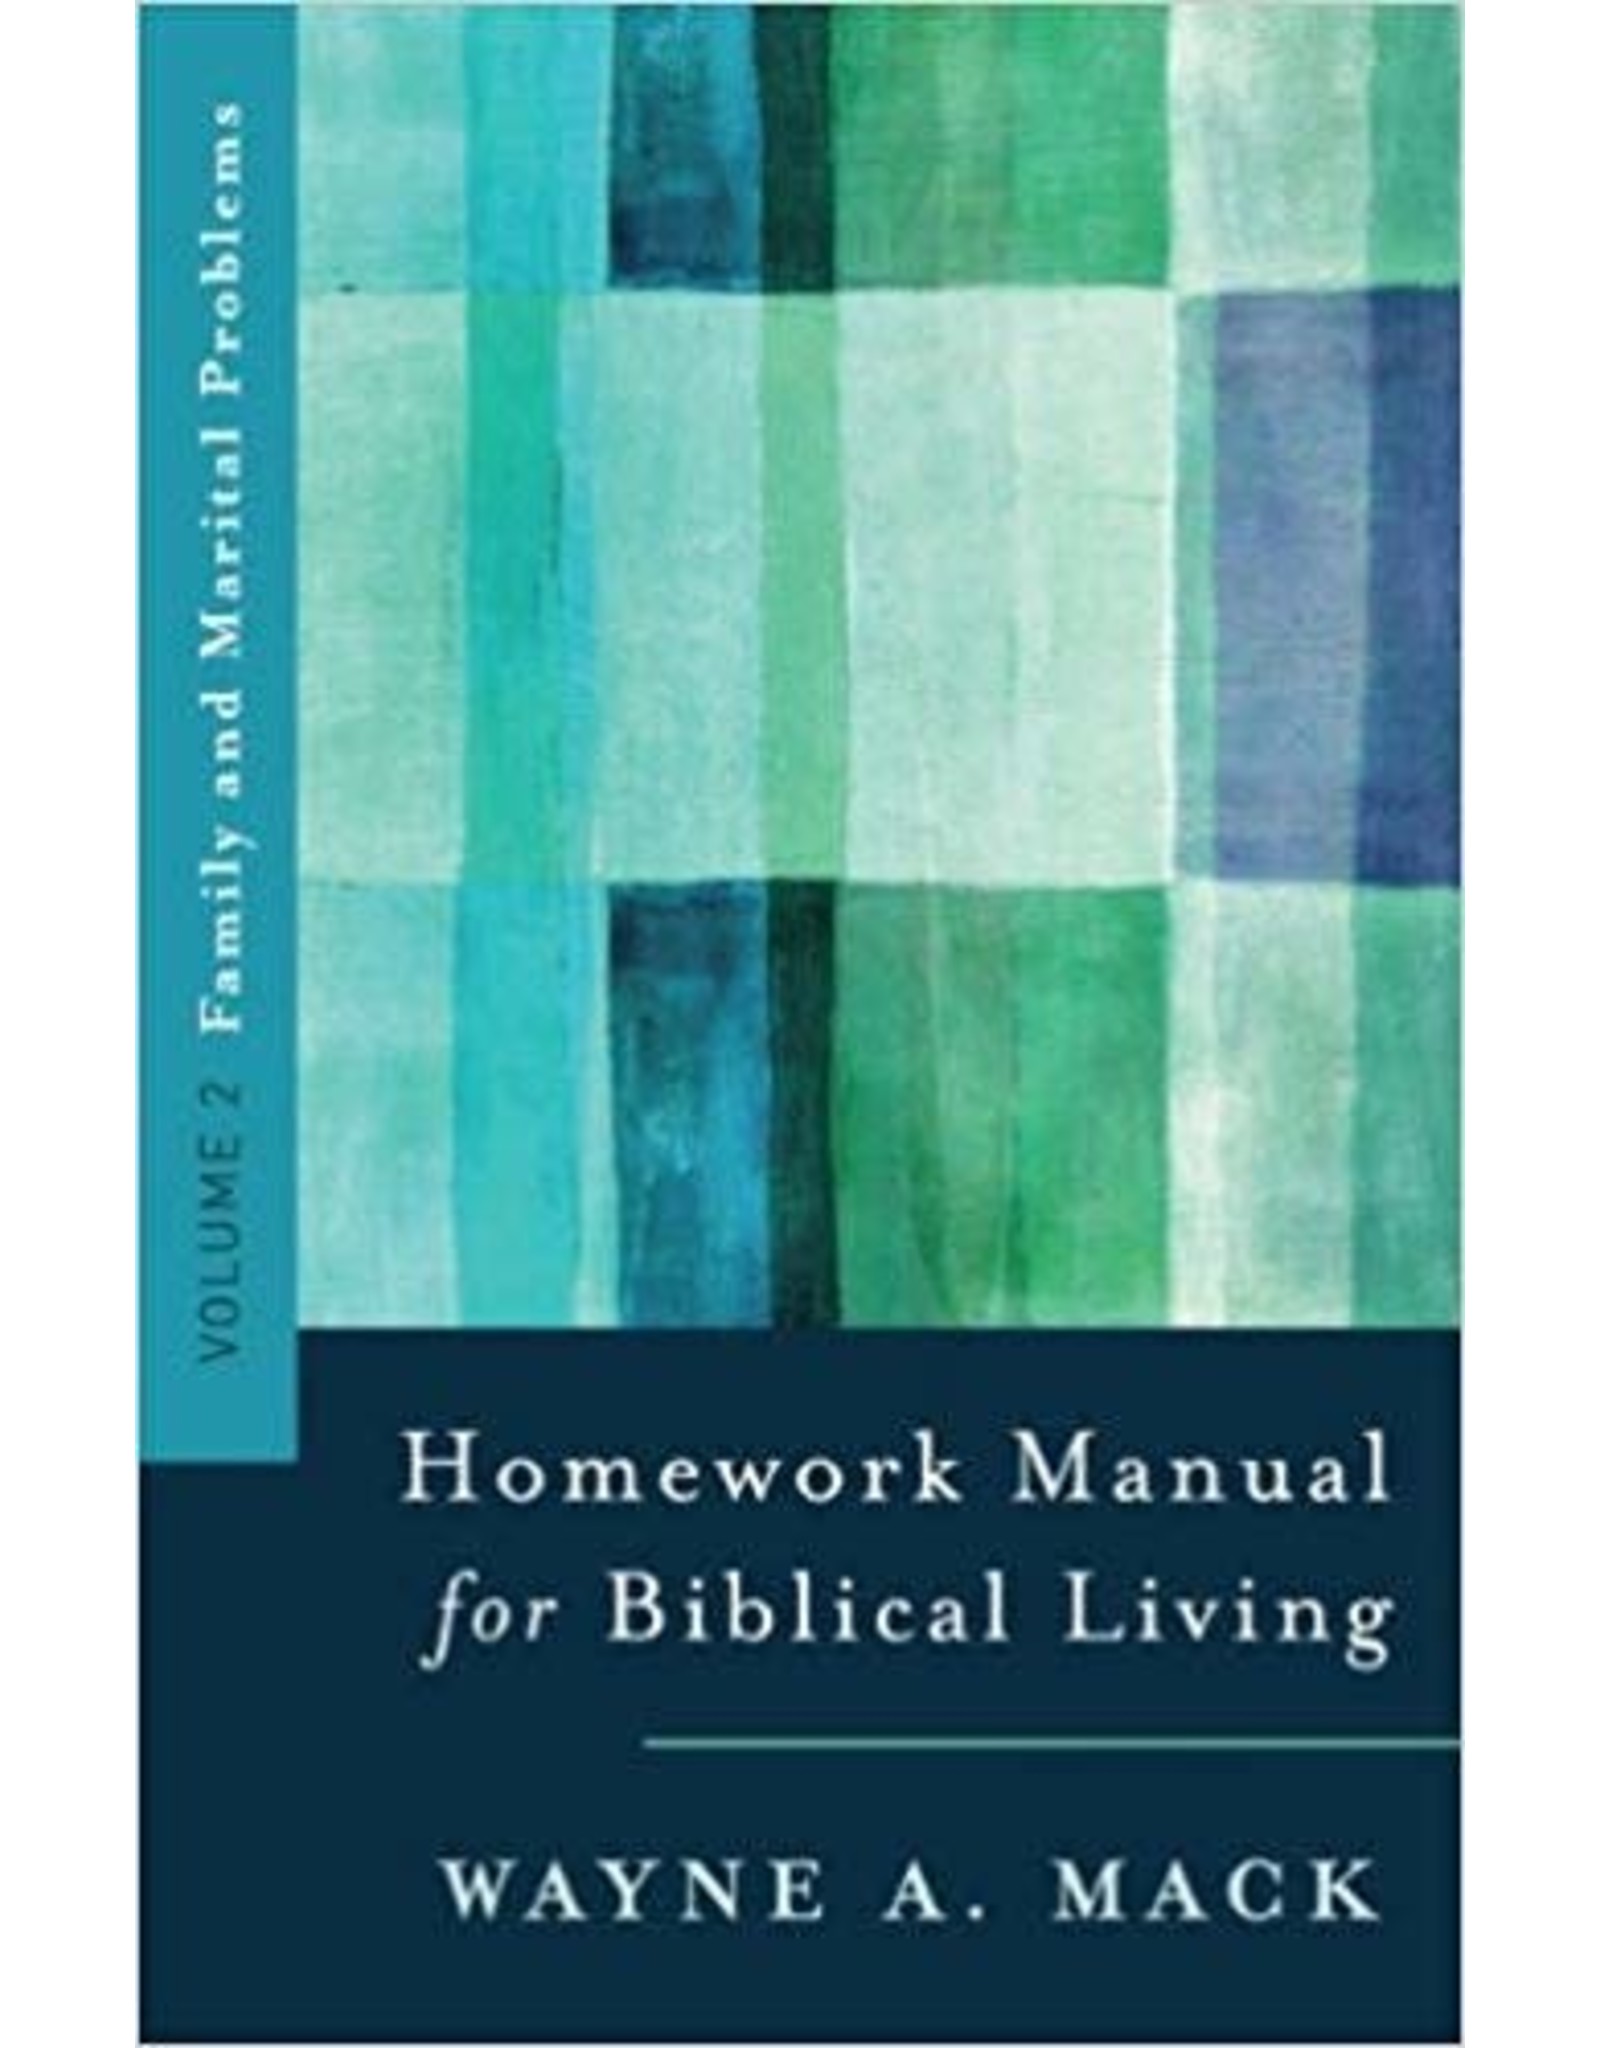 Homework Manual for Biblical Living Vol. 2